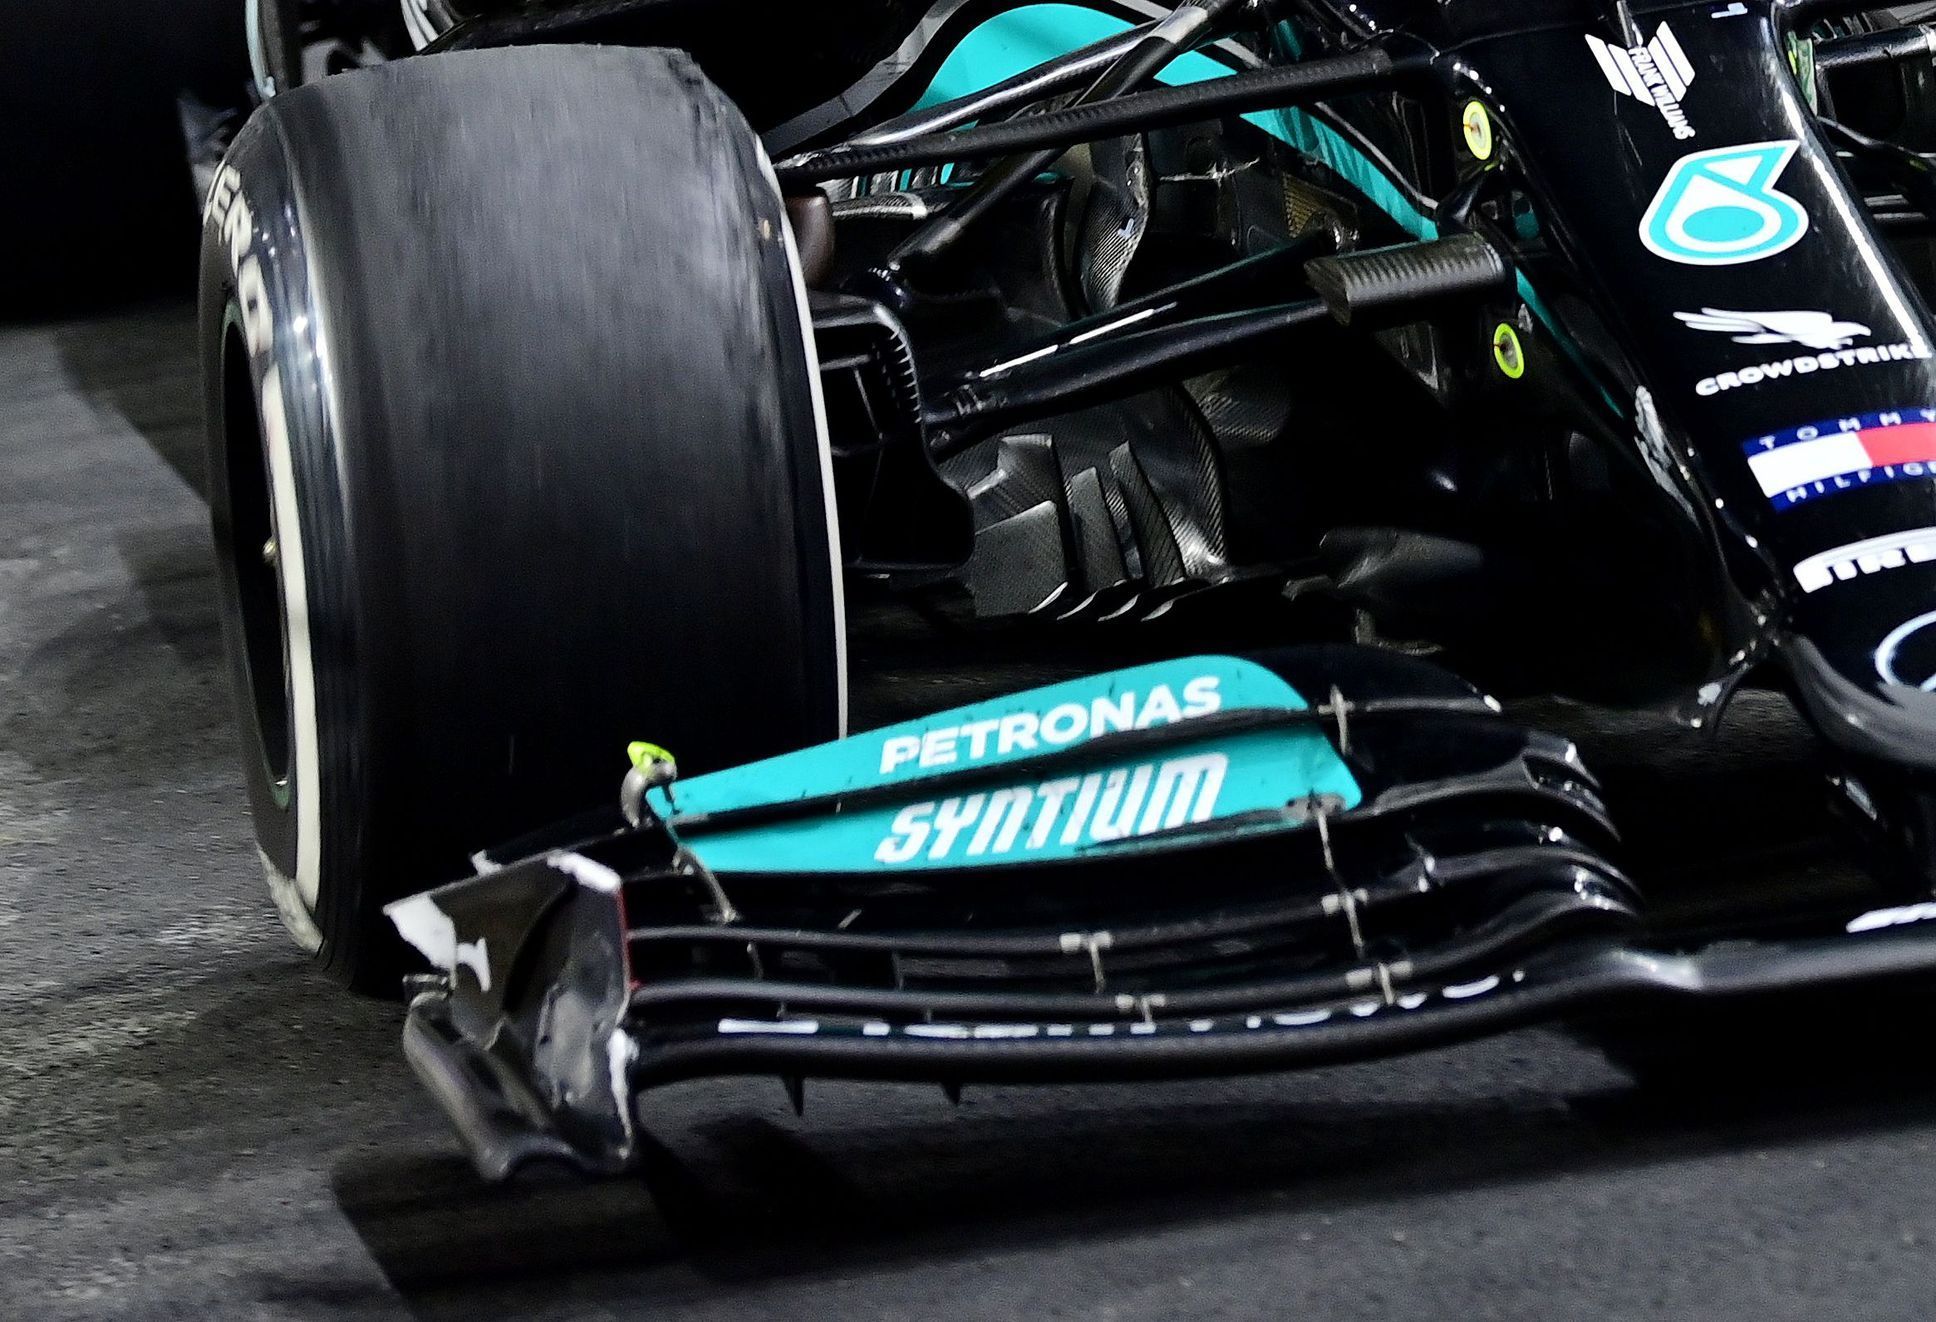 Poničený přední spoiler Mercedesu Lewise Hamiltona v cíli Velké ceny Saúdské Arábie F1 2021